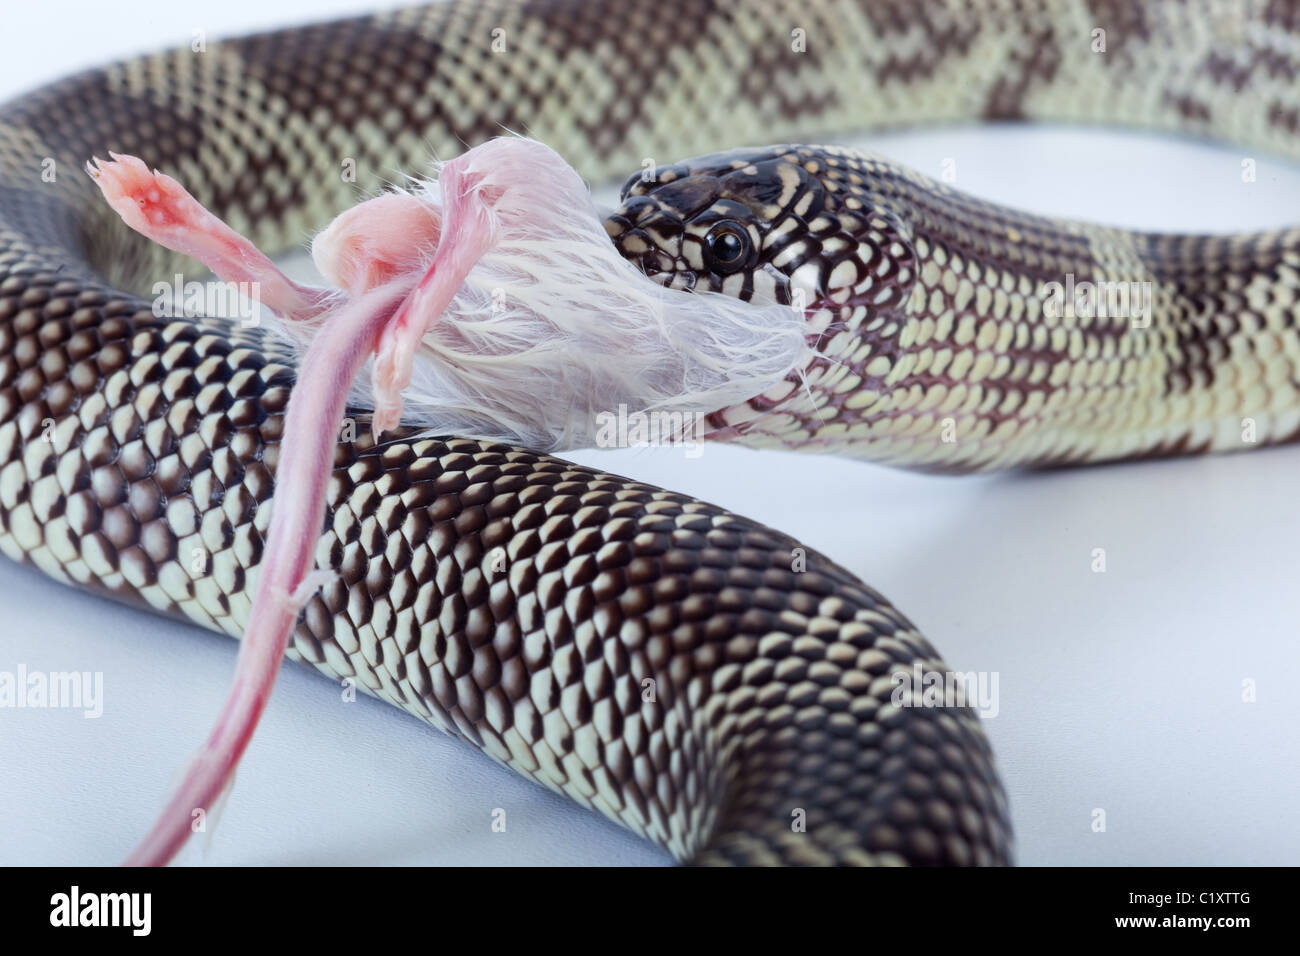 Goins King Snake Lampropeltis getulus goini eating dead mouse Stock Photo